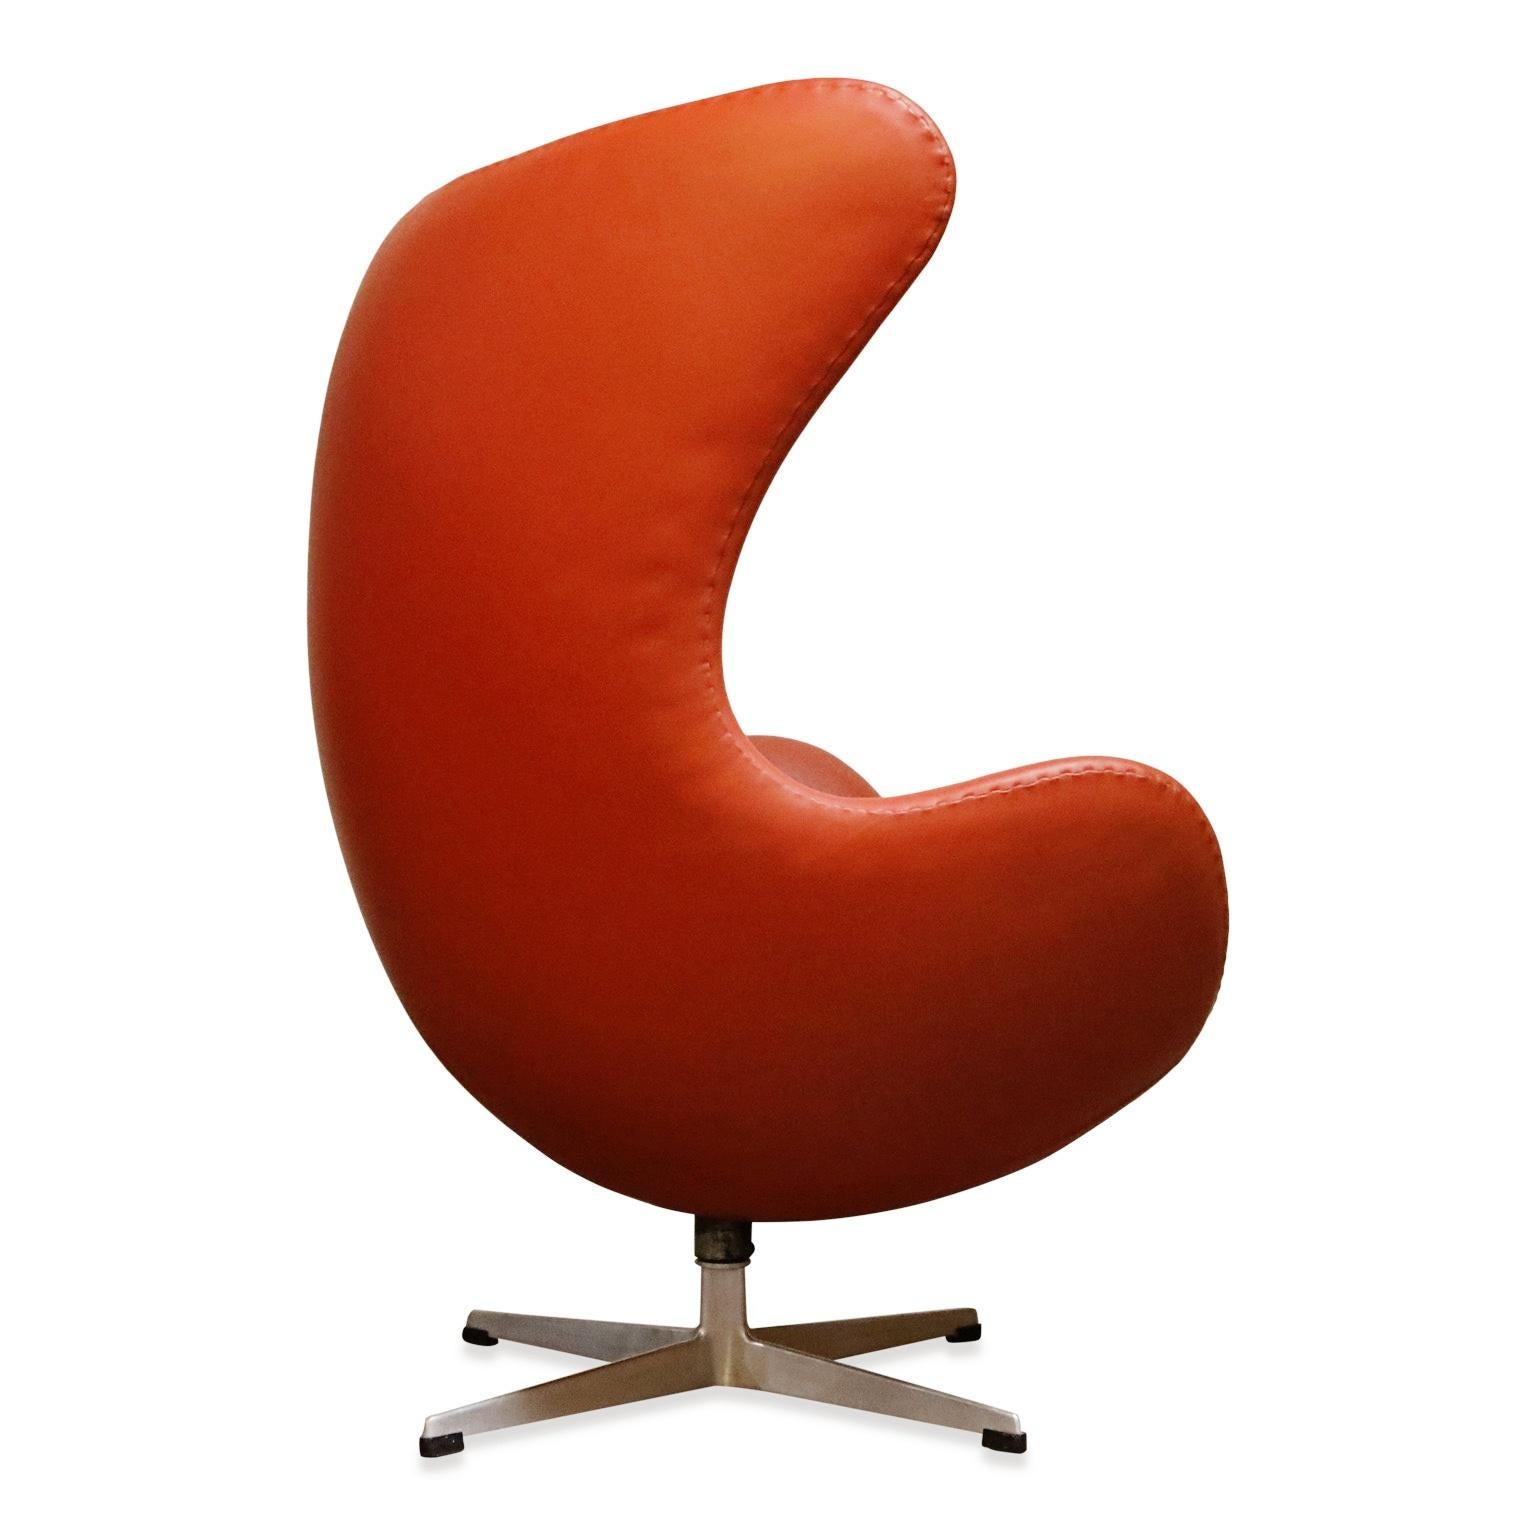 American Egg Chair in Burnt Orange Leather, Arne Jacobsen for Fritz Hansen, Signed 1963